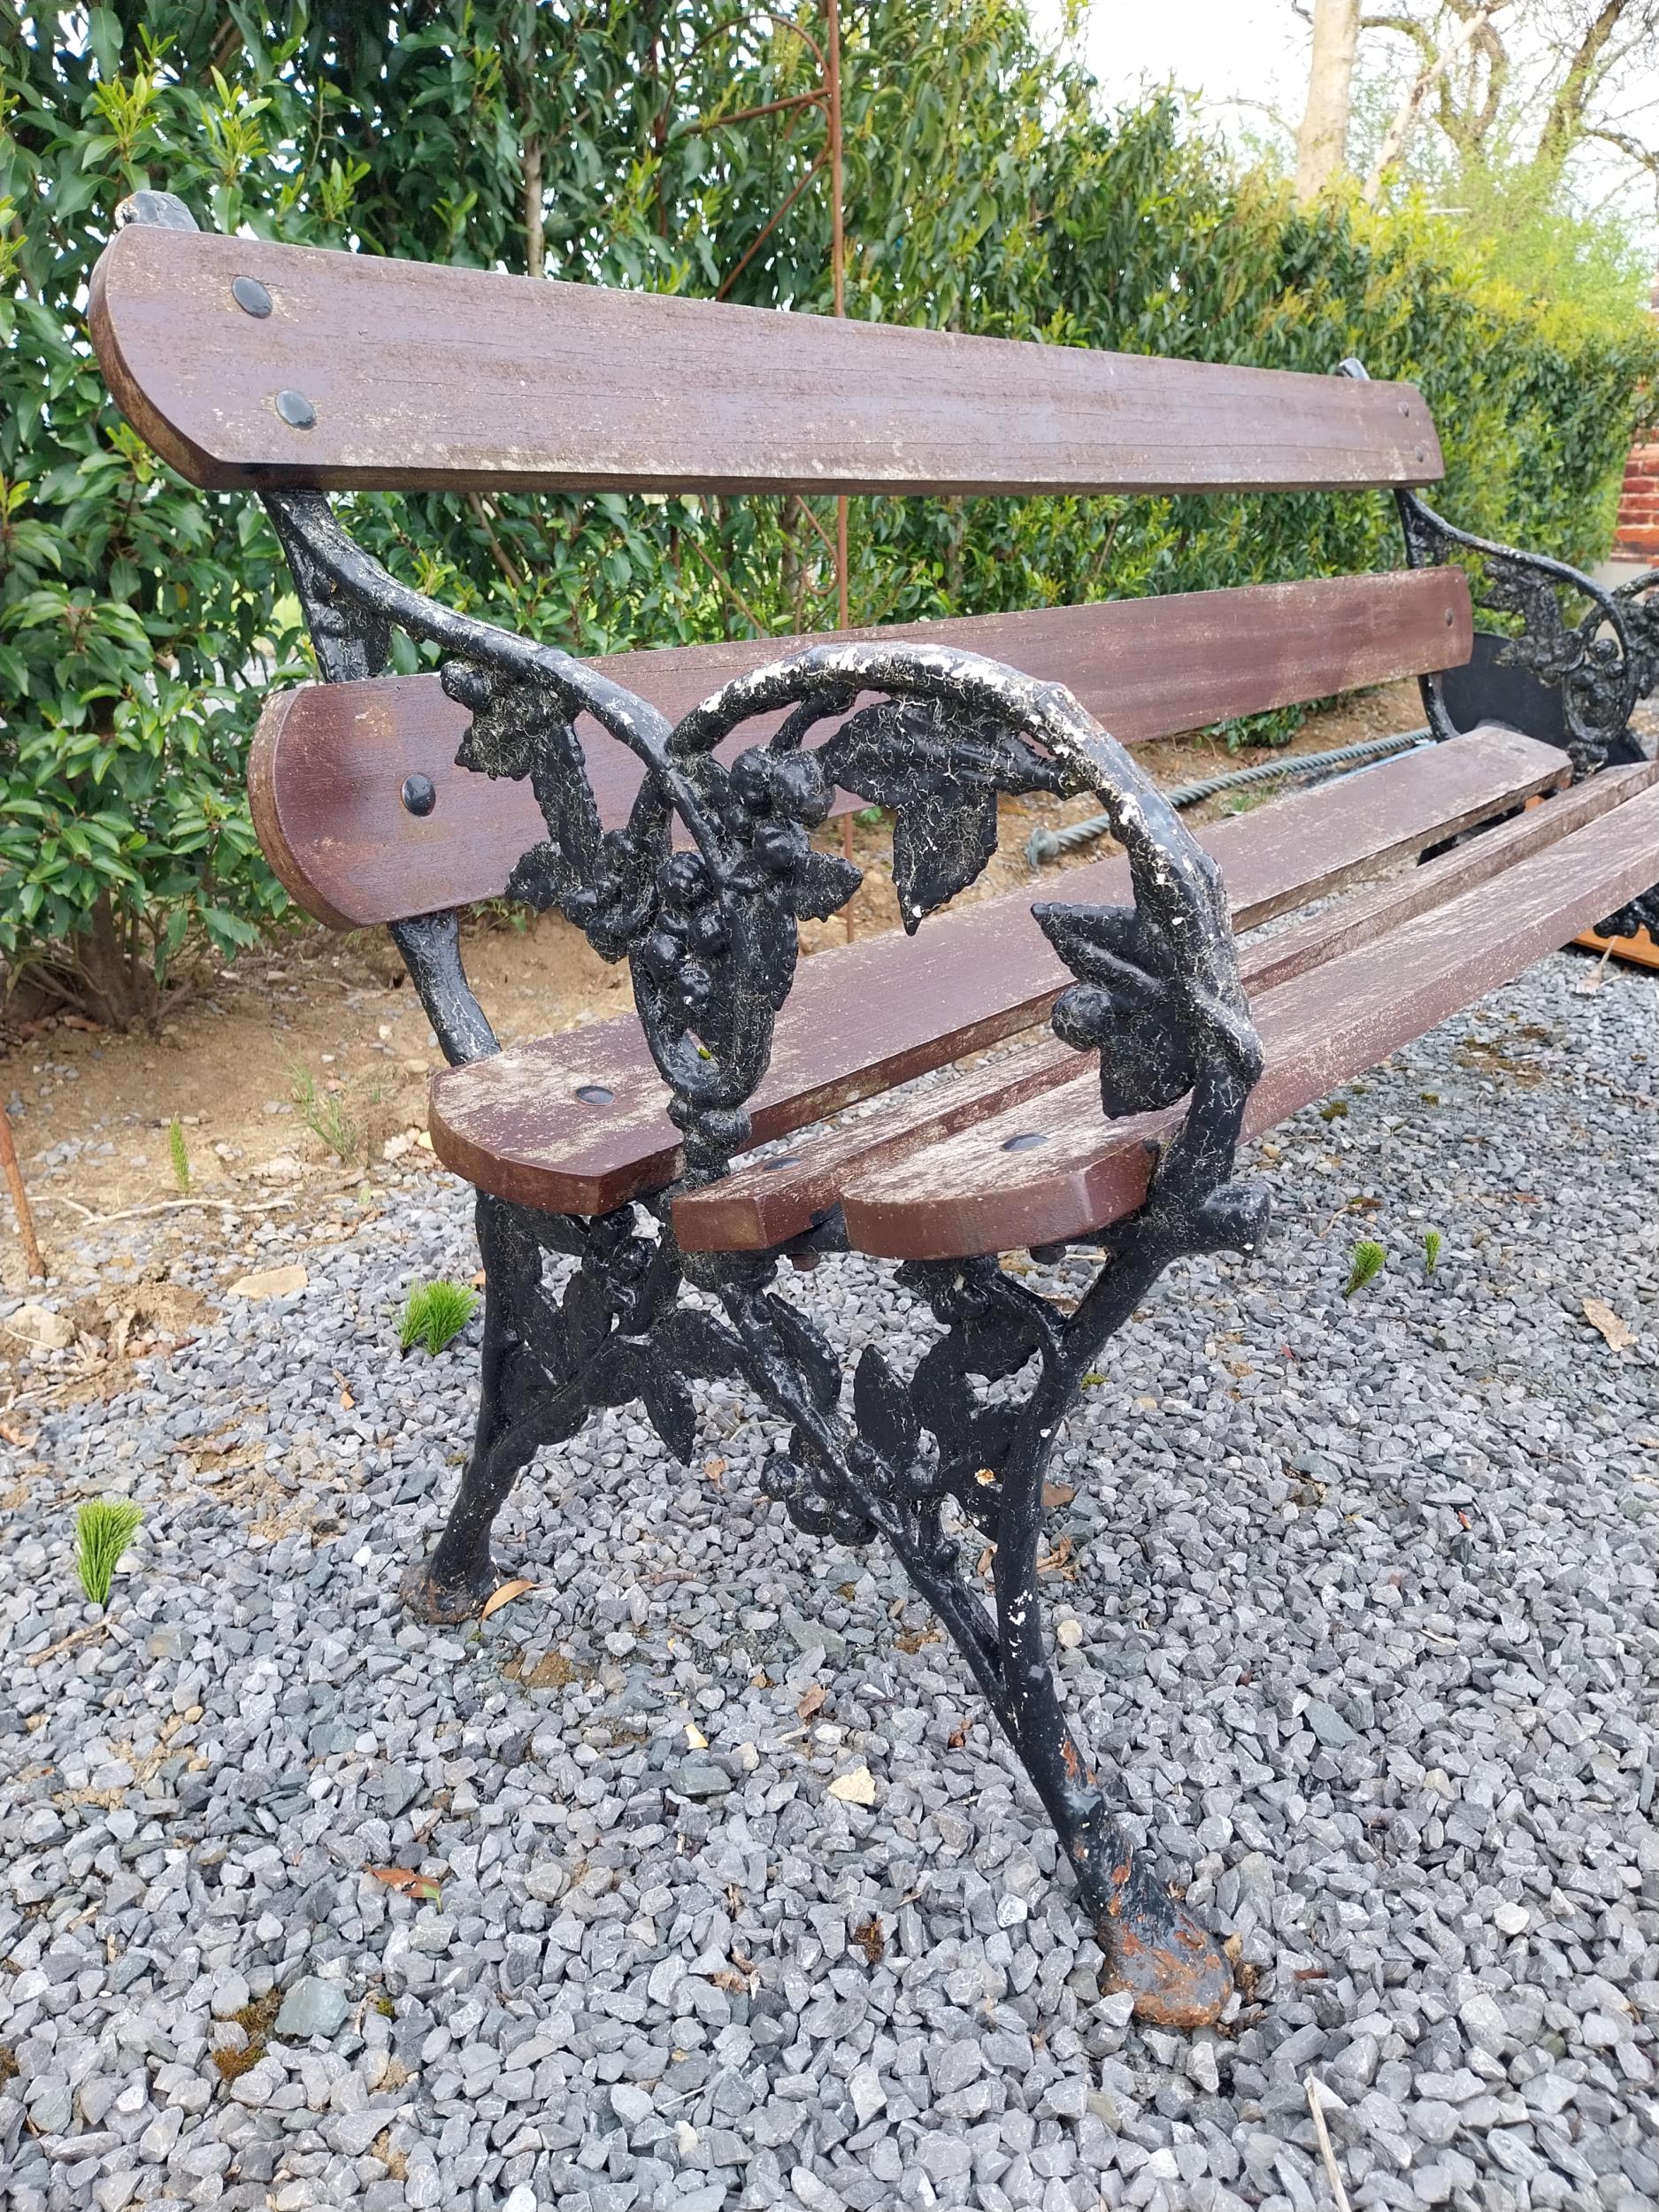 19th C. cast iron garden bench with wooden slats {80 cm H x 167 cm W x 62 cm D}. - Image 2 of 2